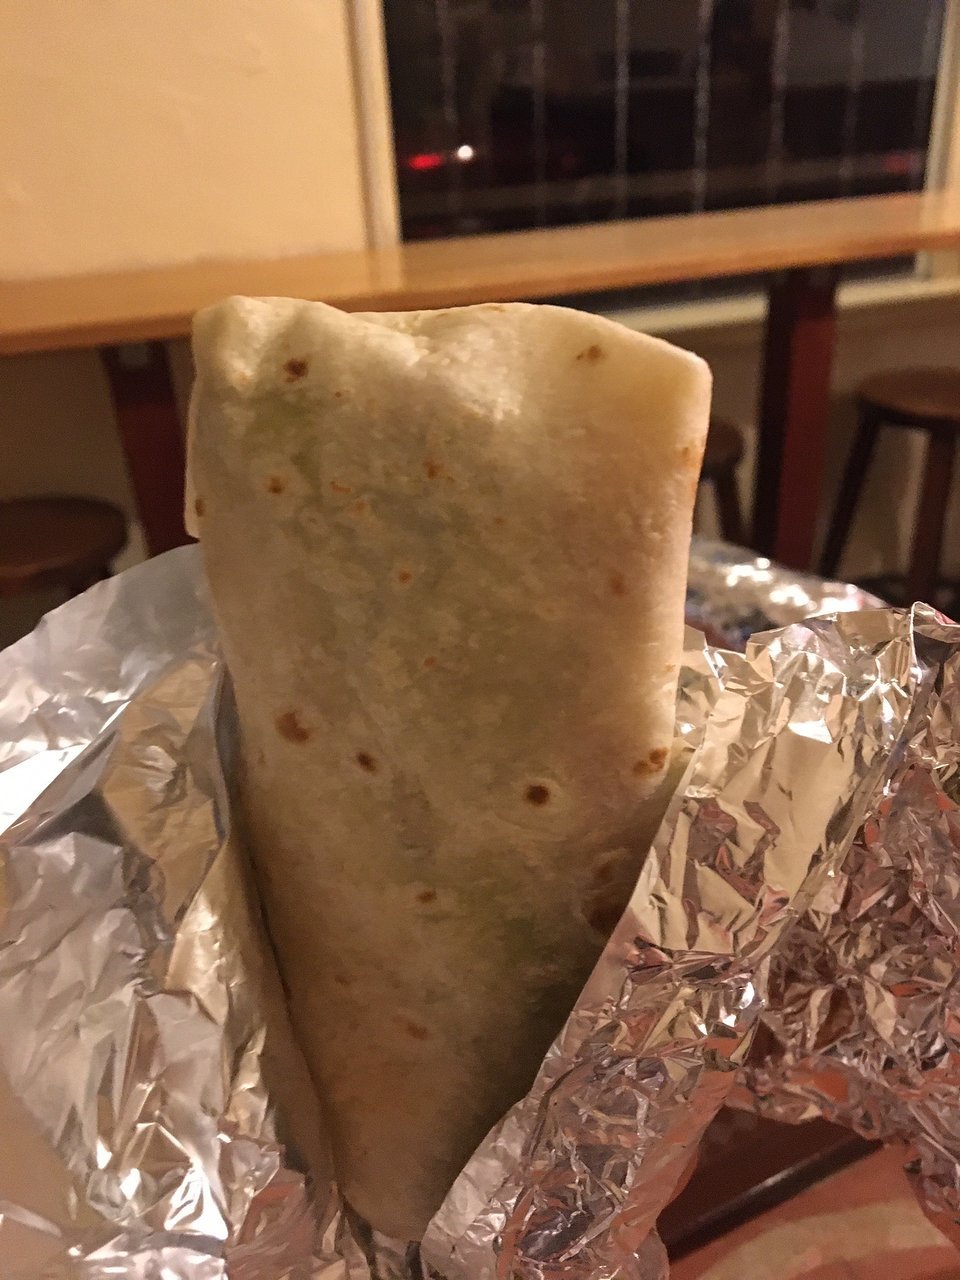 Rollup Burrito